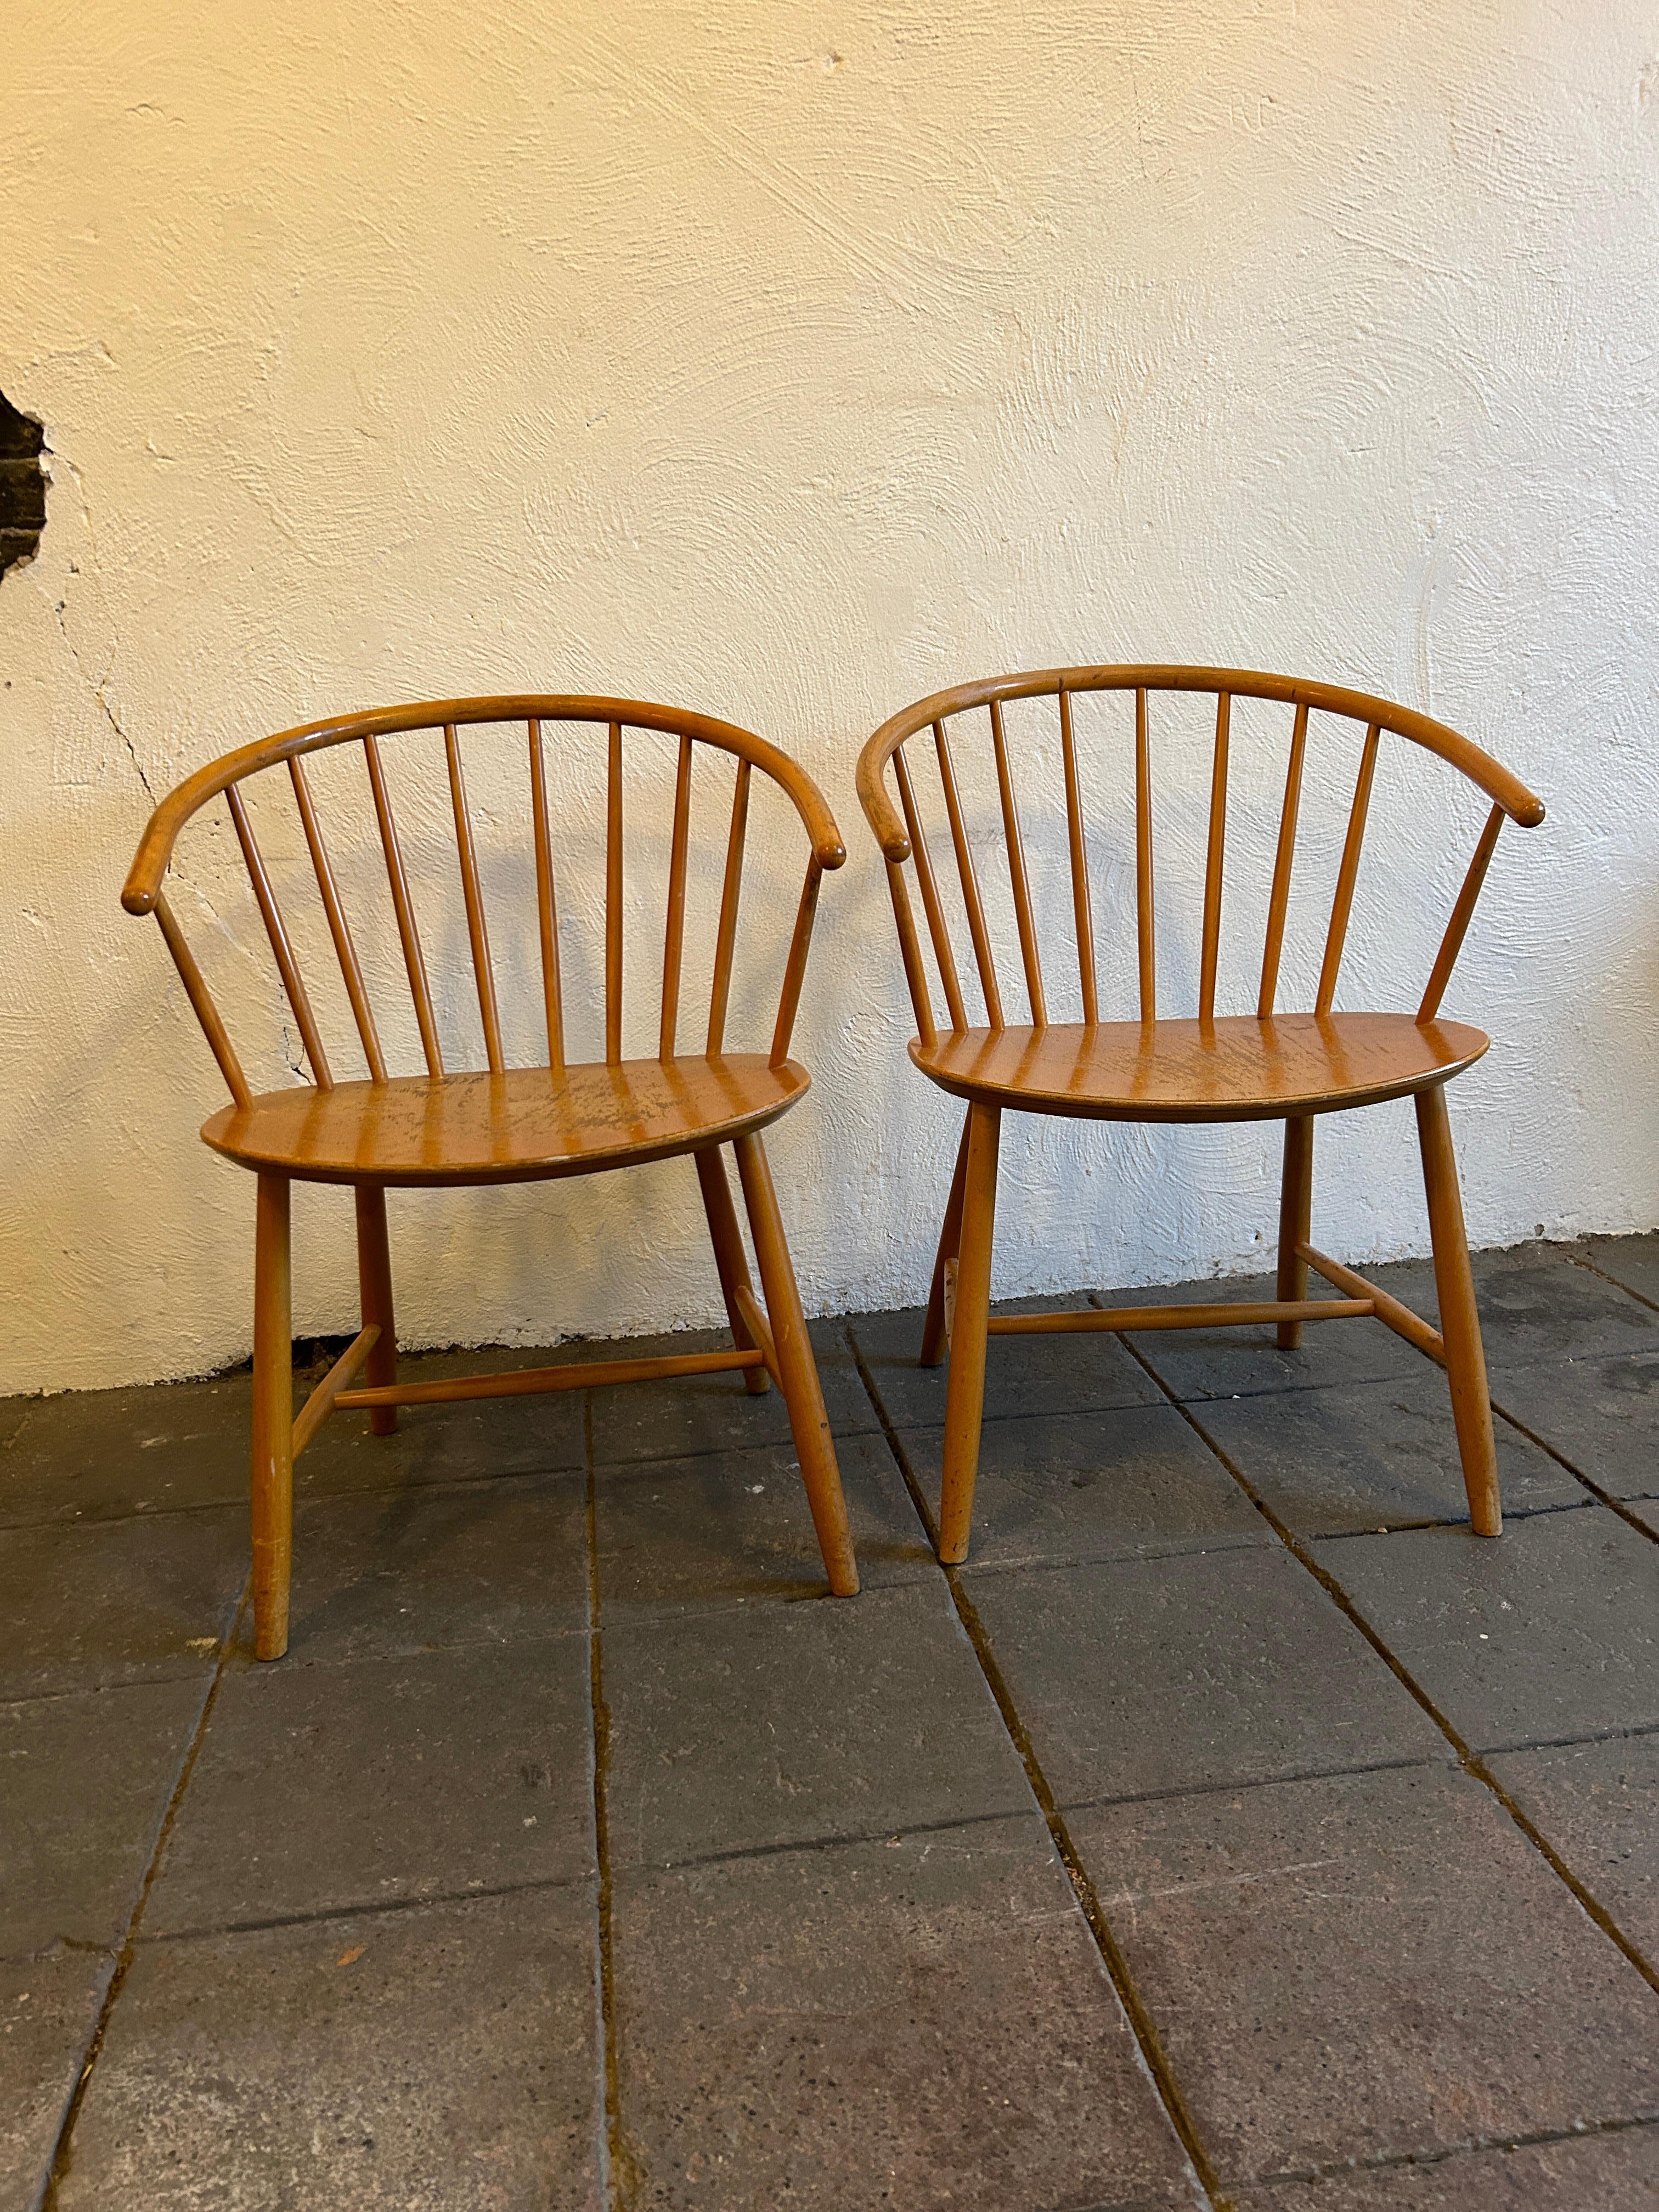 
Paire de chaises d'appoint vintage Ejvind A. Johansson J64 pour FDB Mobler. Milieu du XXe siècle. Fauteuils de style Windsor avec accoudoirs, traverses et pieds en bois courbé. Le logo FDB, les marques et la mention 